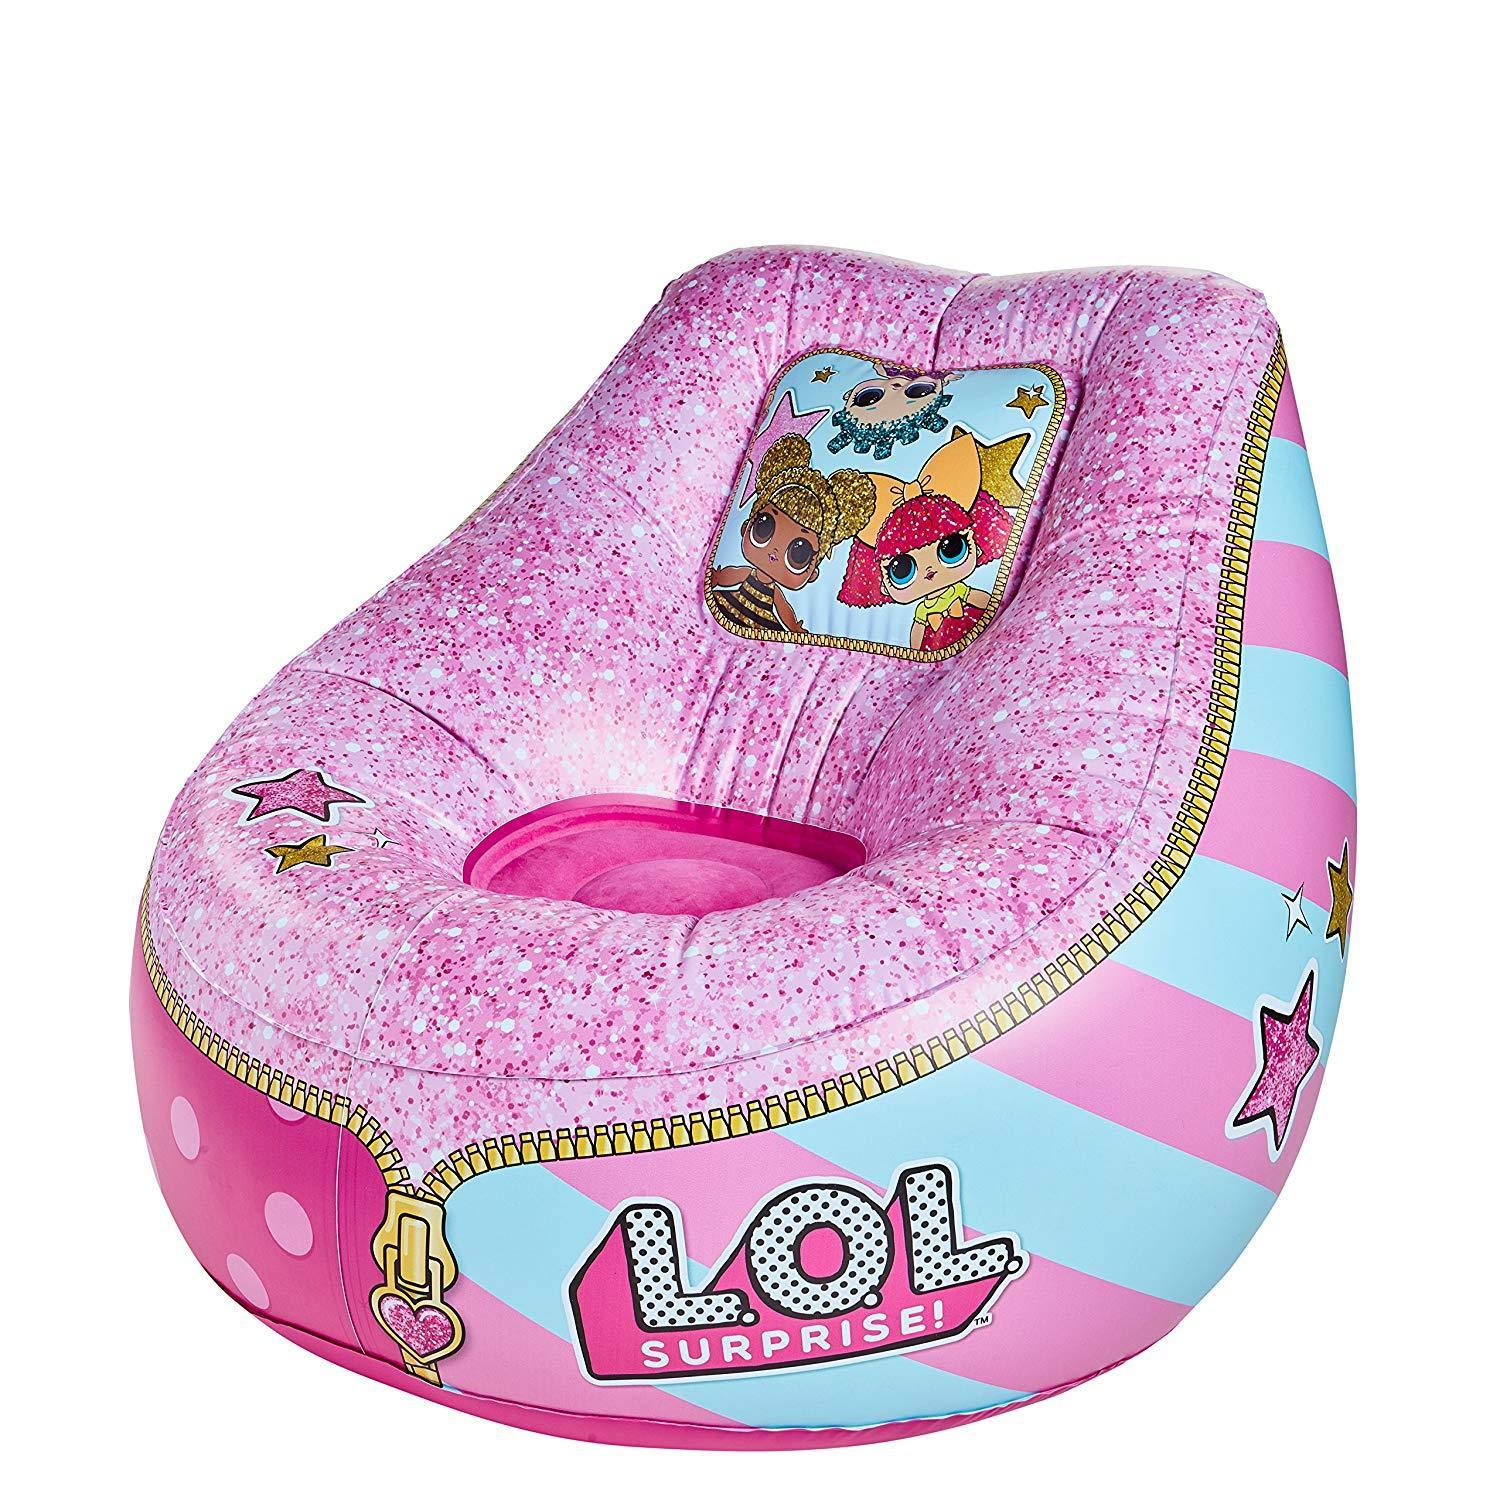 LOL Surprise - Cadeira Inflável para Crianças Anne Claire Baby Store 